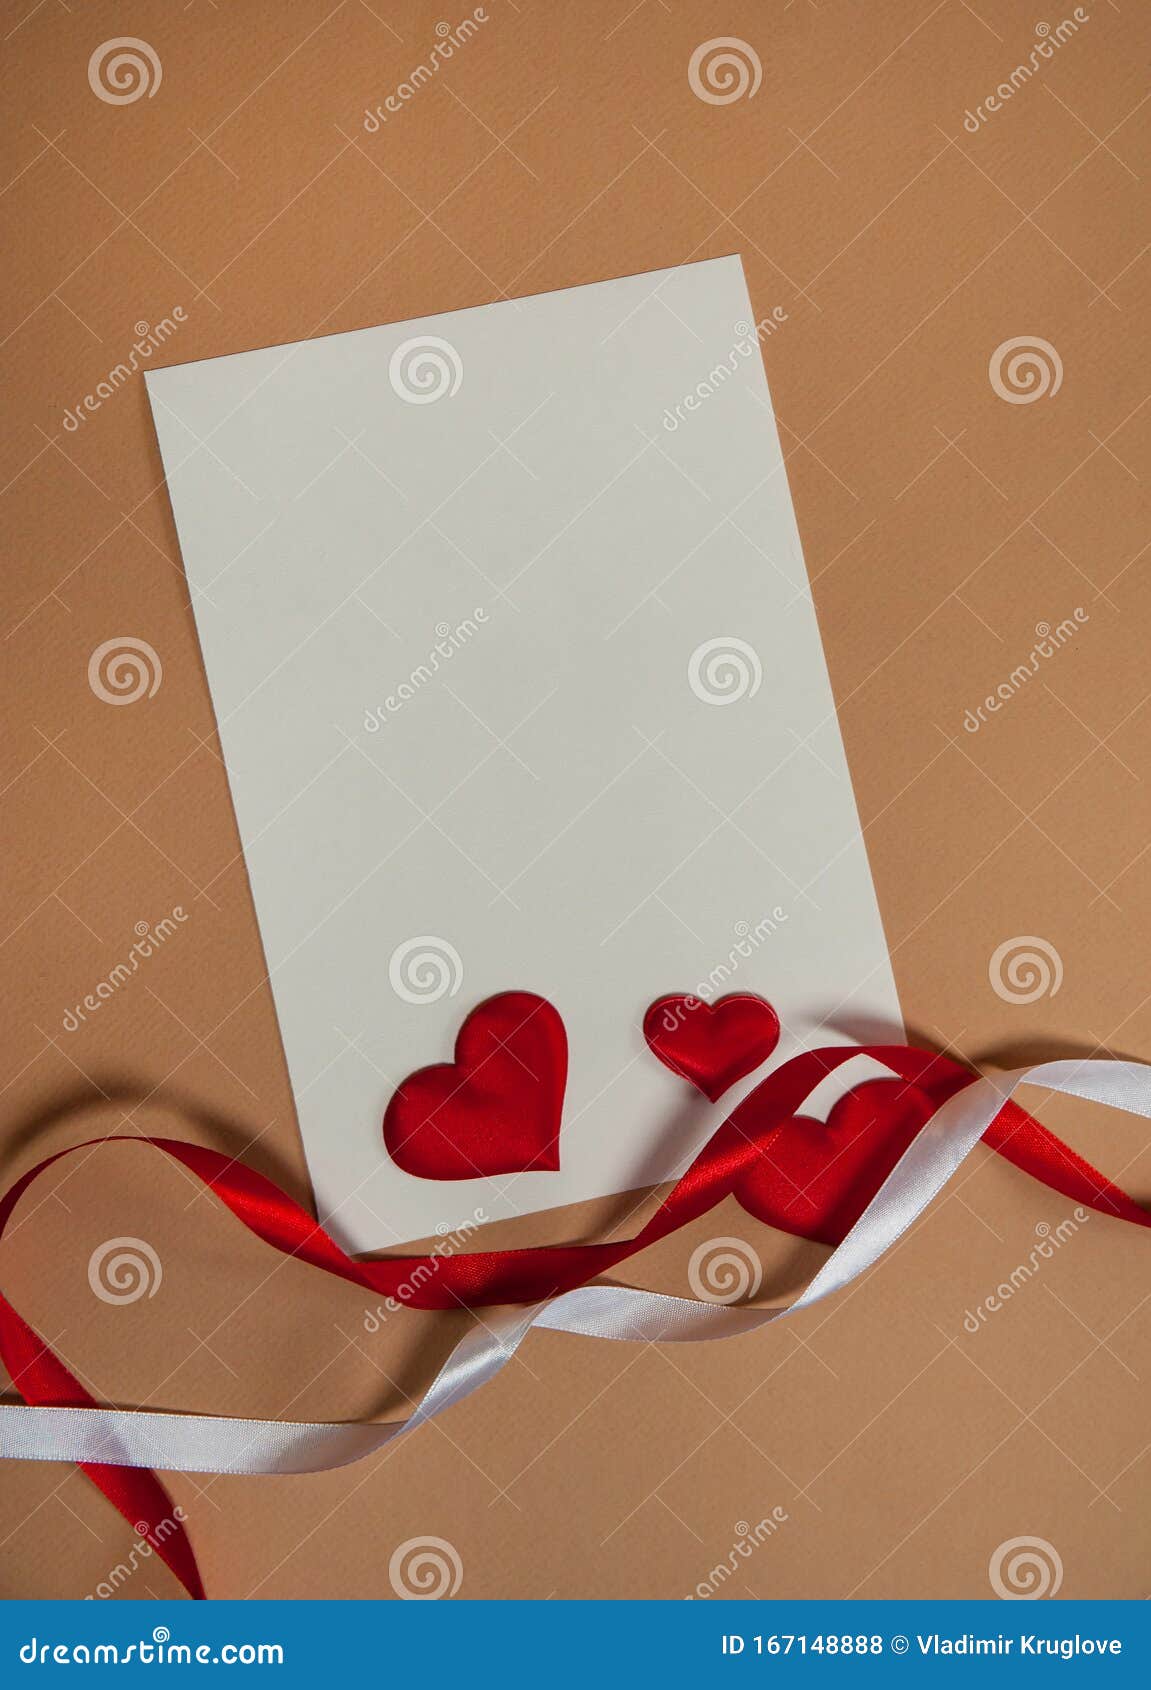 De Amor Una Hoja En Blanco De Papel, Corazones Rojos Y Cintas Sobre Un Fondo Beige Foto de - Imagen de libre, blanco: 167148888